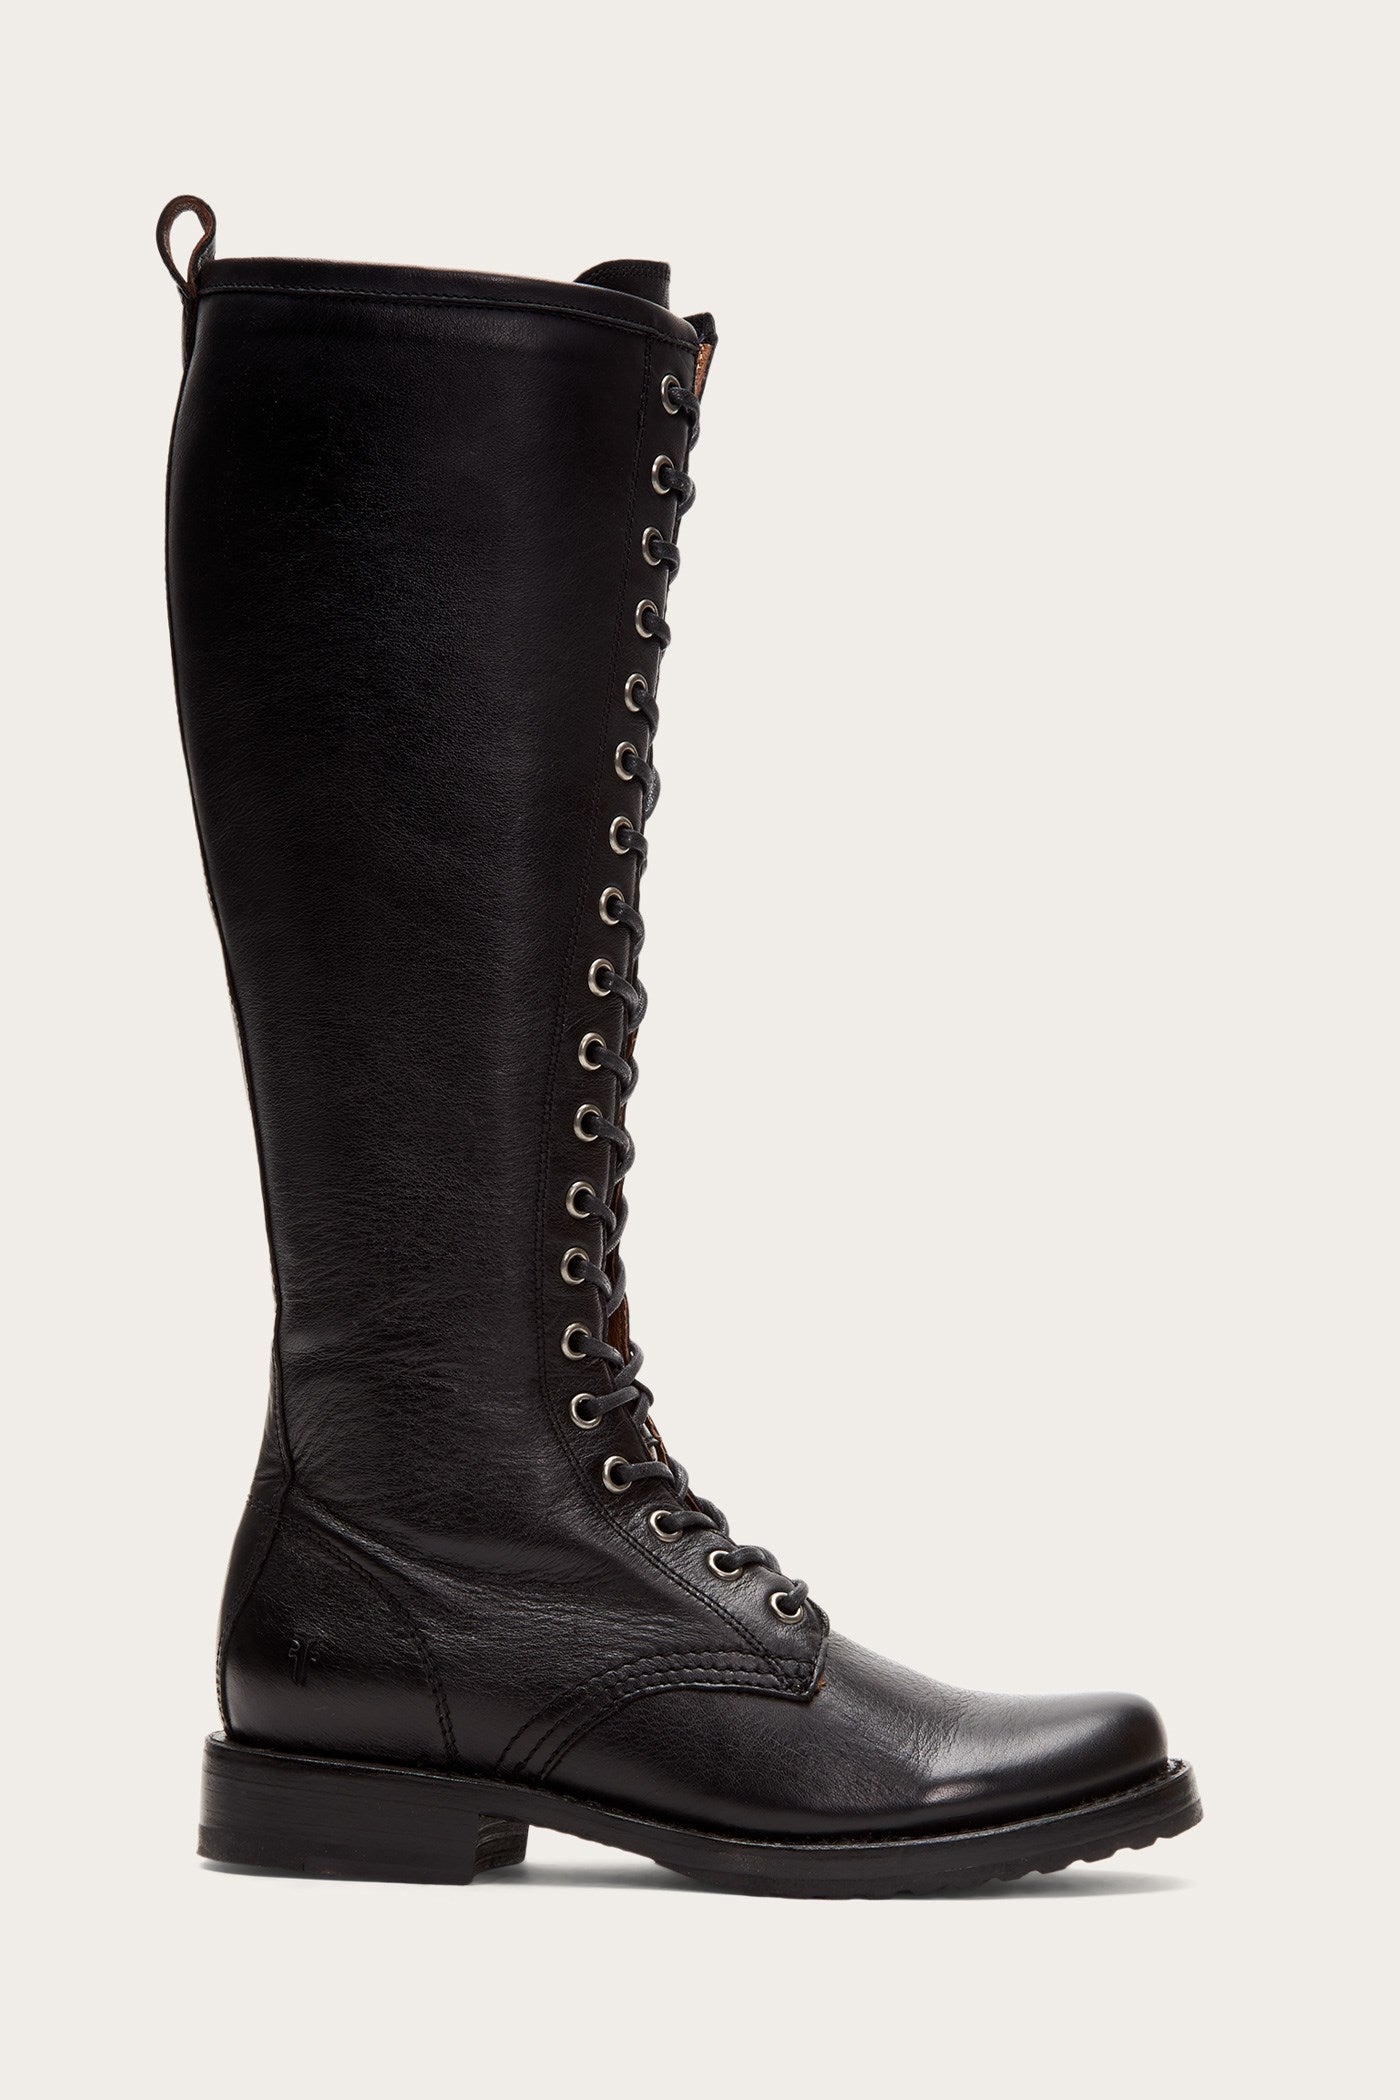 high black combat boots